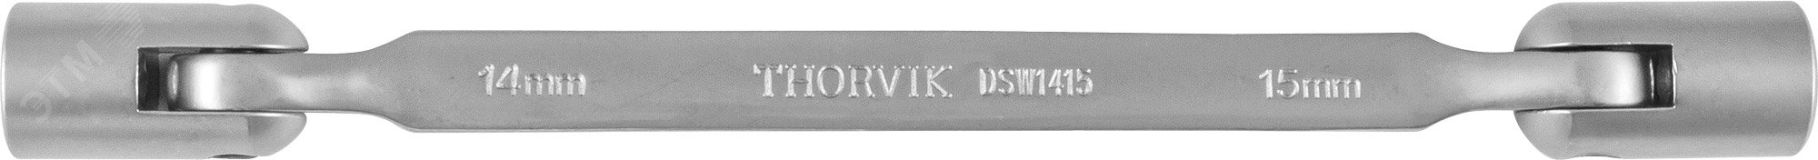 Ключ гаечный карданный, 14х15 мм 053550 Thorvik